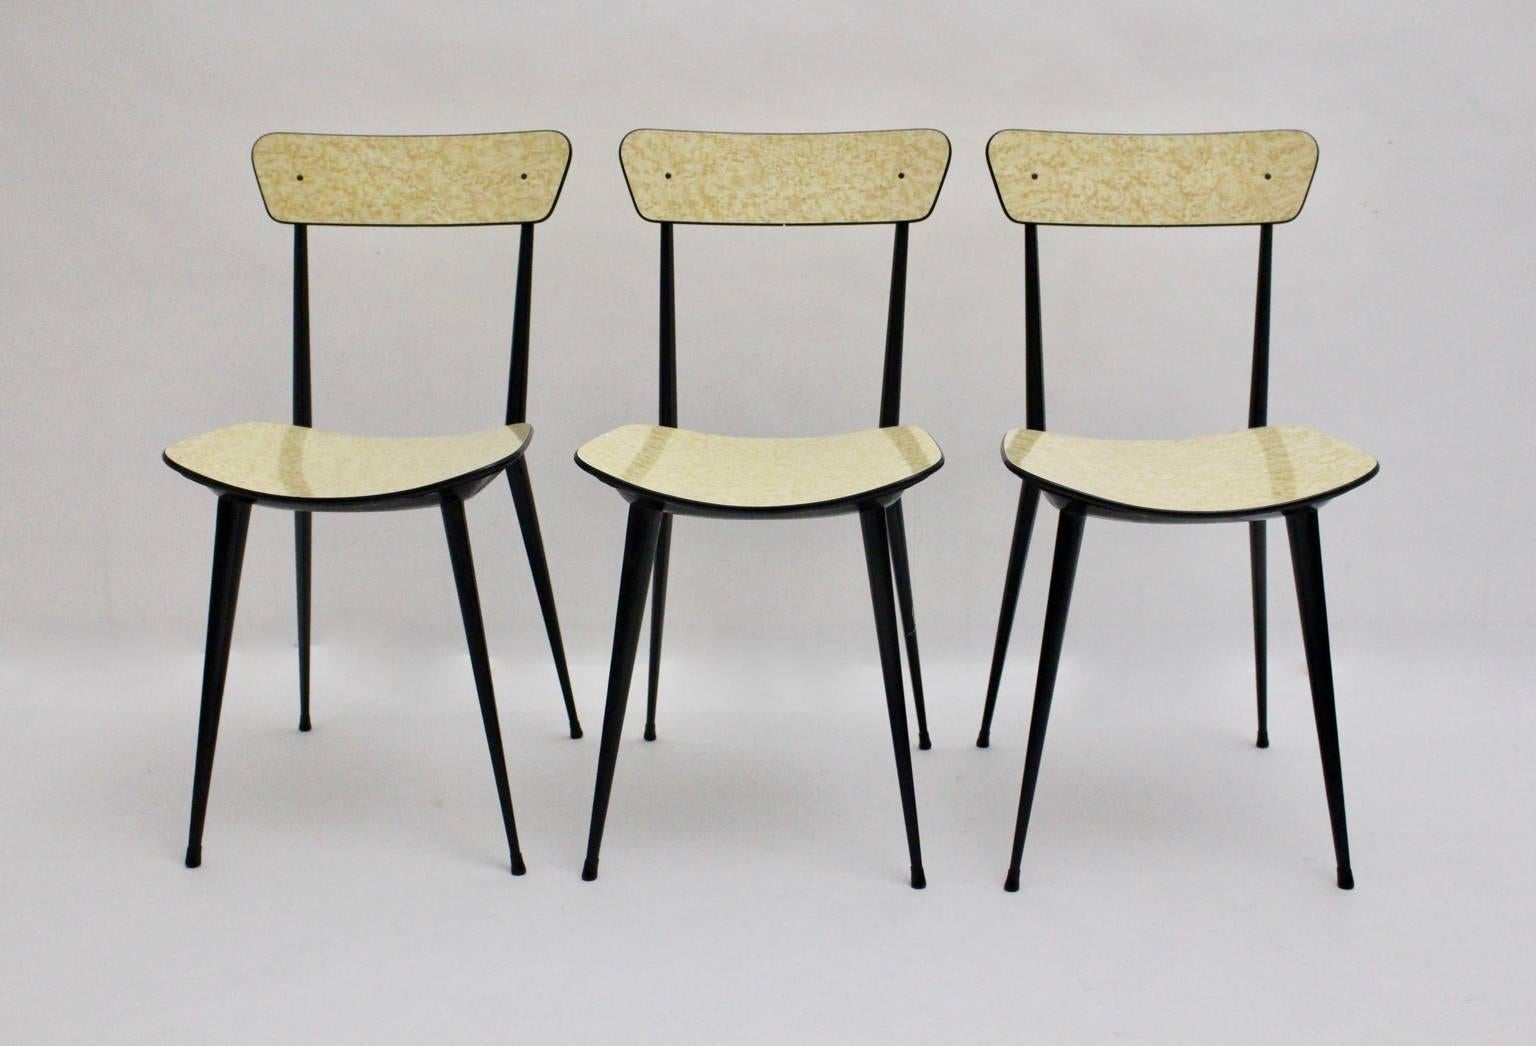 Mid Century Modern Satz von drei Esszimmerstühlen sehr ähnlich dem Design von Carlo di Carli.
Das Gestell wurde aus schwarz lackiertem Metall gefertigt, während die Sitzfläche und die Rückenlehne aus Formica bestehen. Unter dem Sitz befindet sich